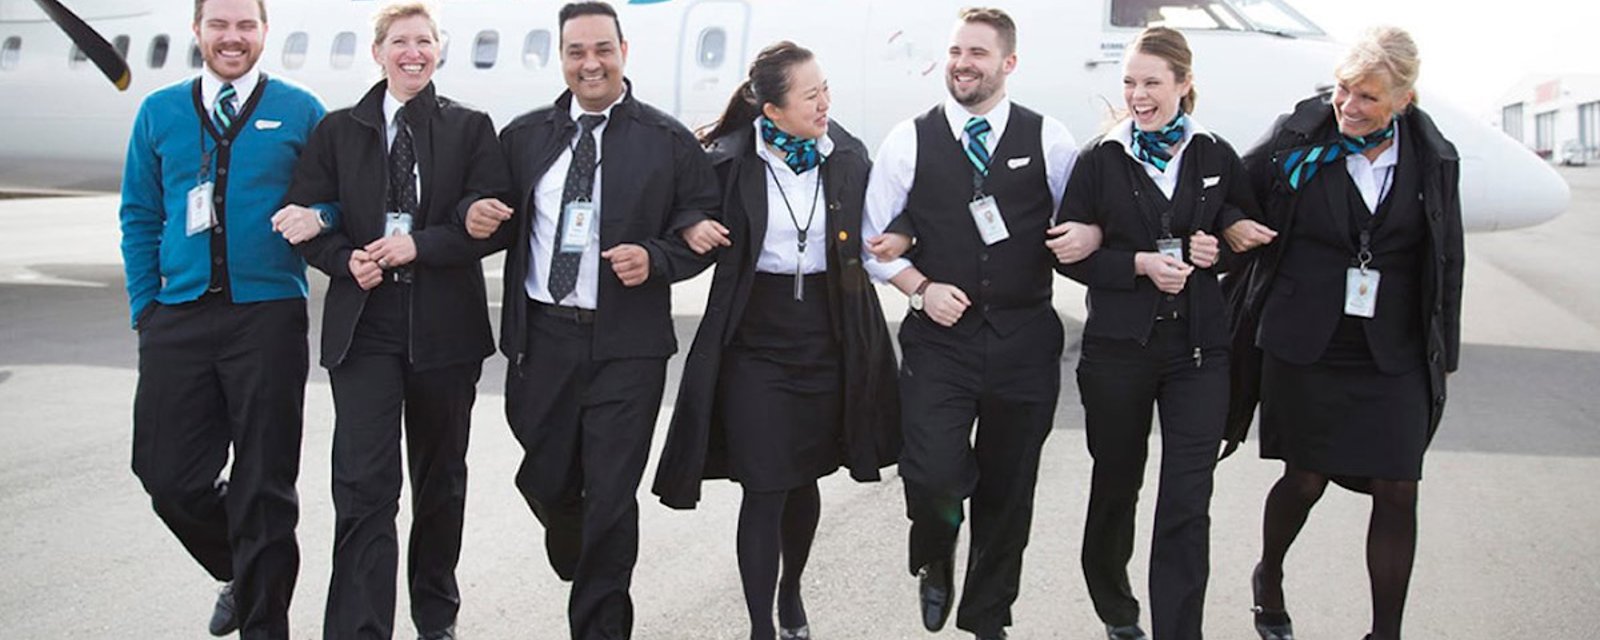 WestJet lance des uniformes inclusifs pour son personnel de bord